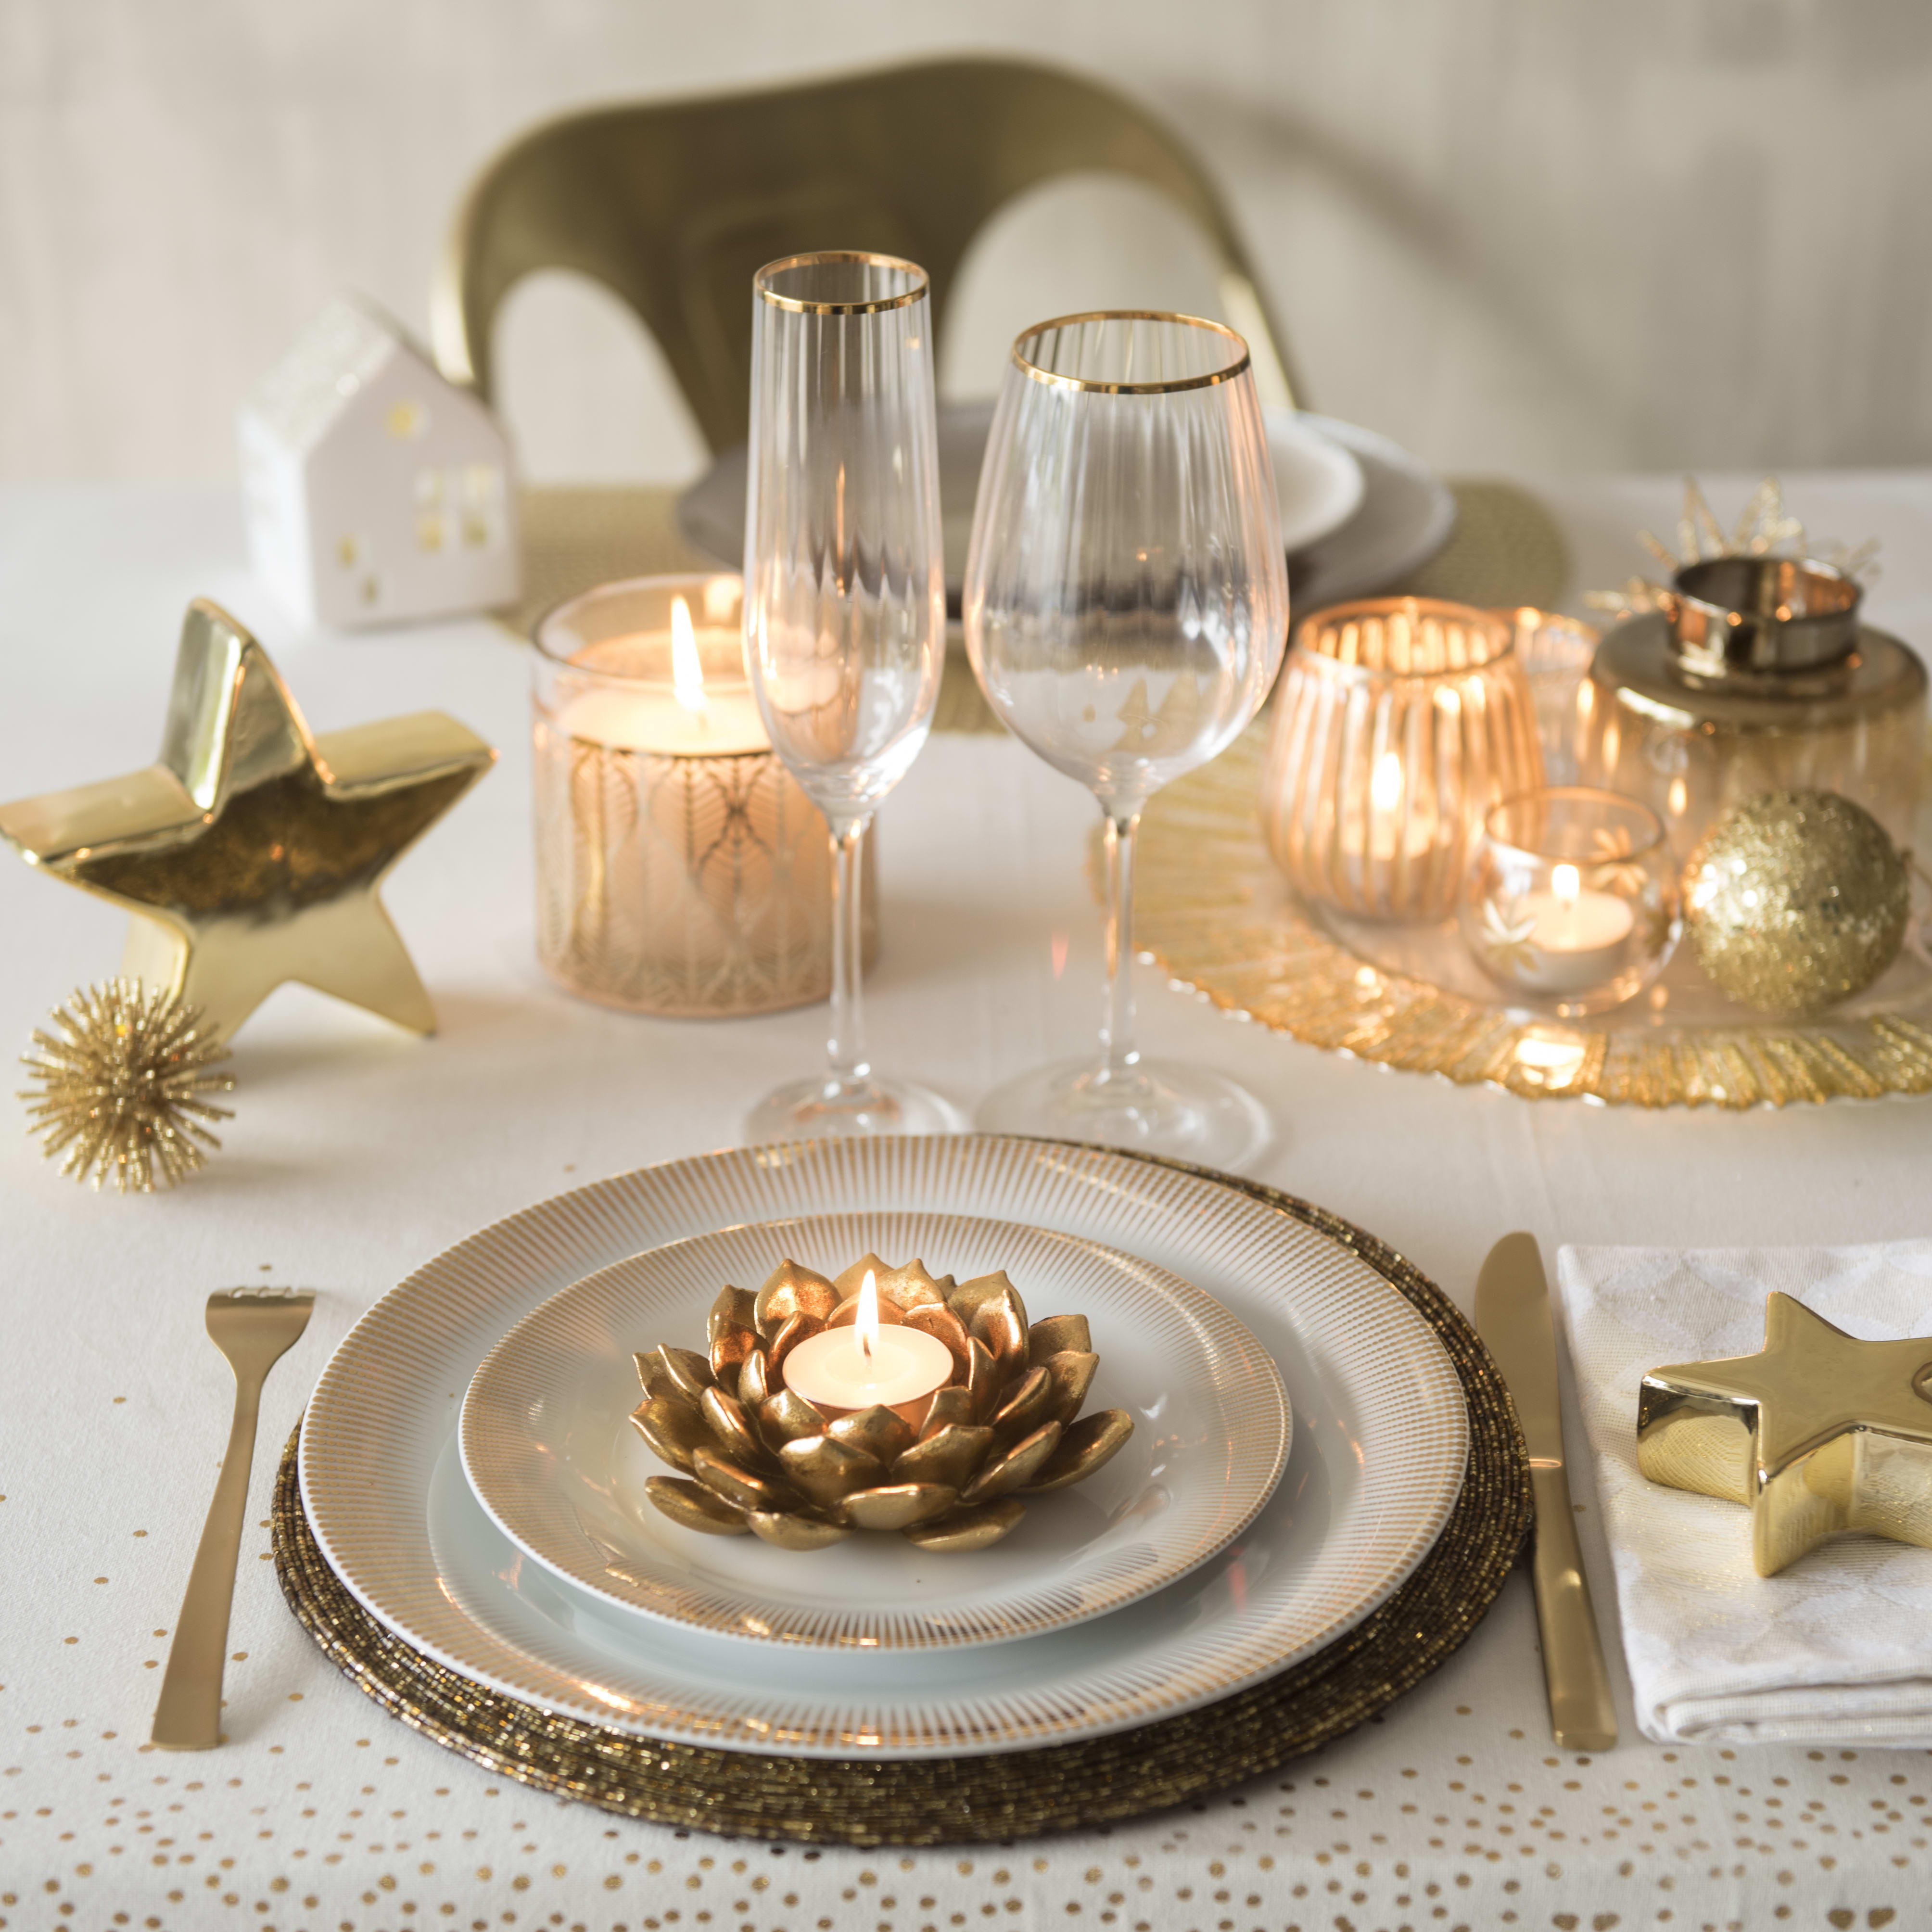 Le dorée peut mettre en valeur votre table de Noël.